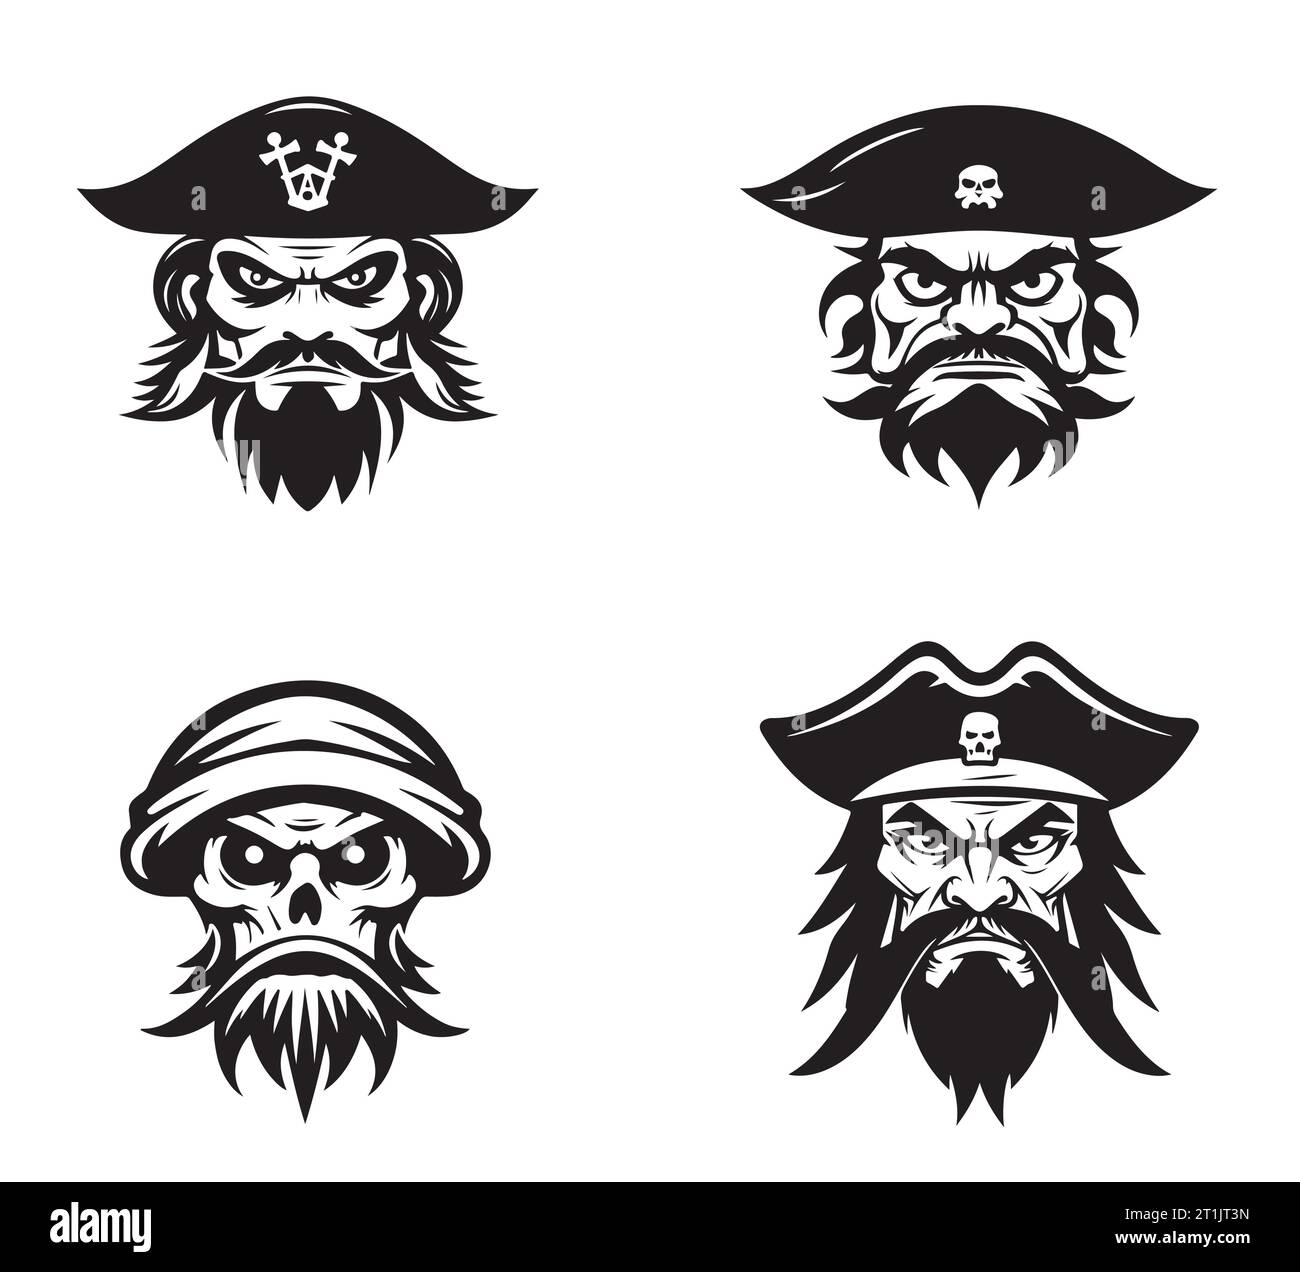 Cabeza de pirata con sombrero, diseño de logotipo de emblema de marinero Ilustración en estilo moderno Ilustración del Vector